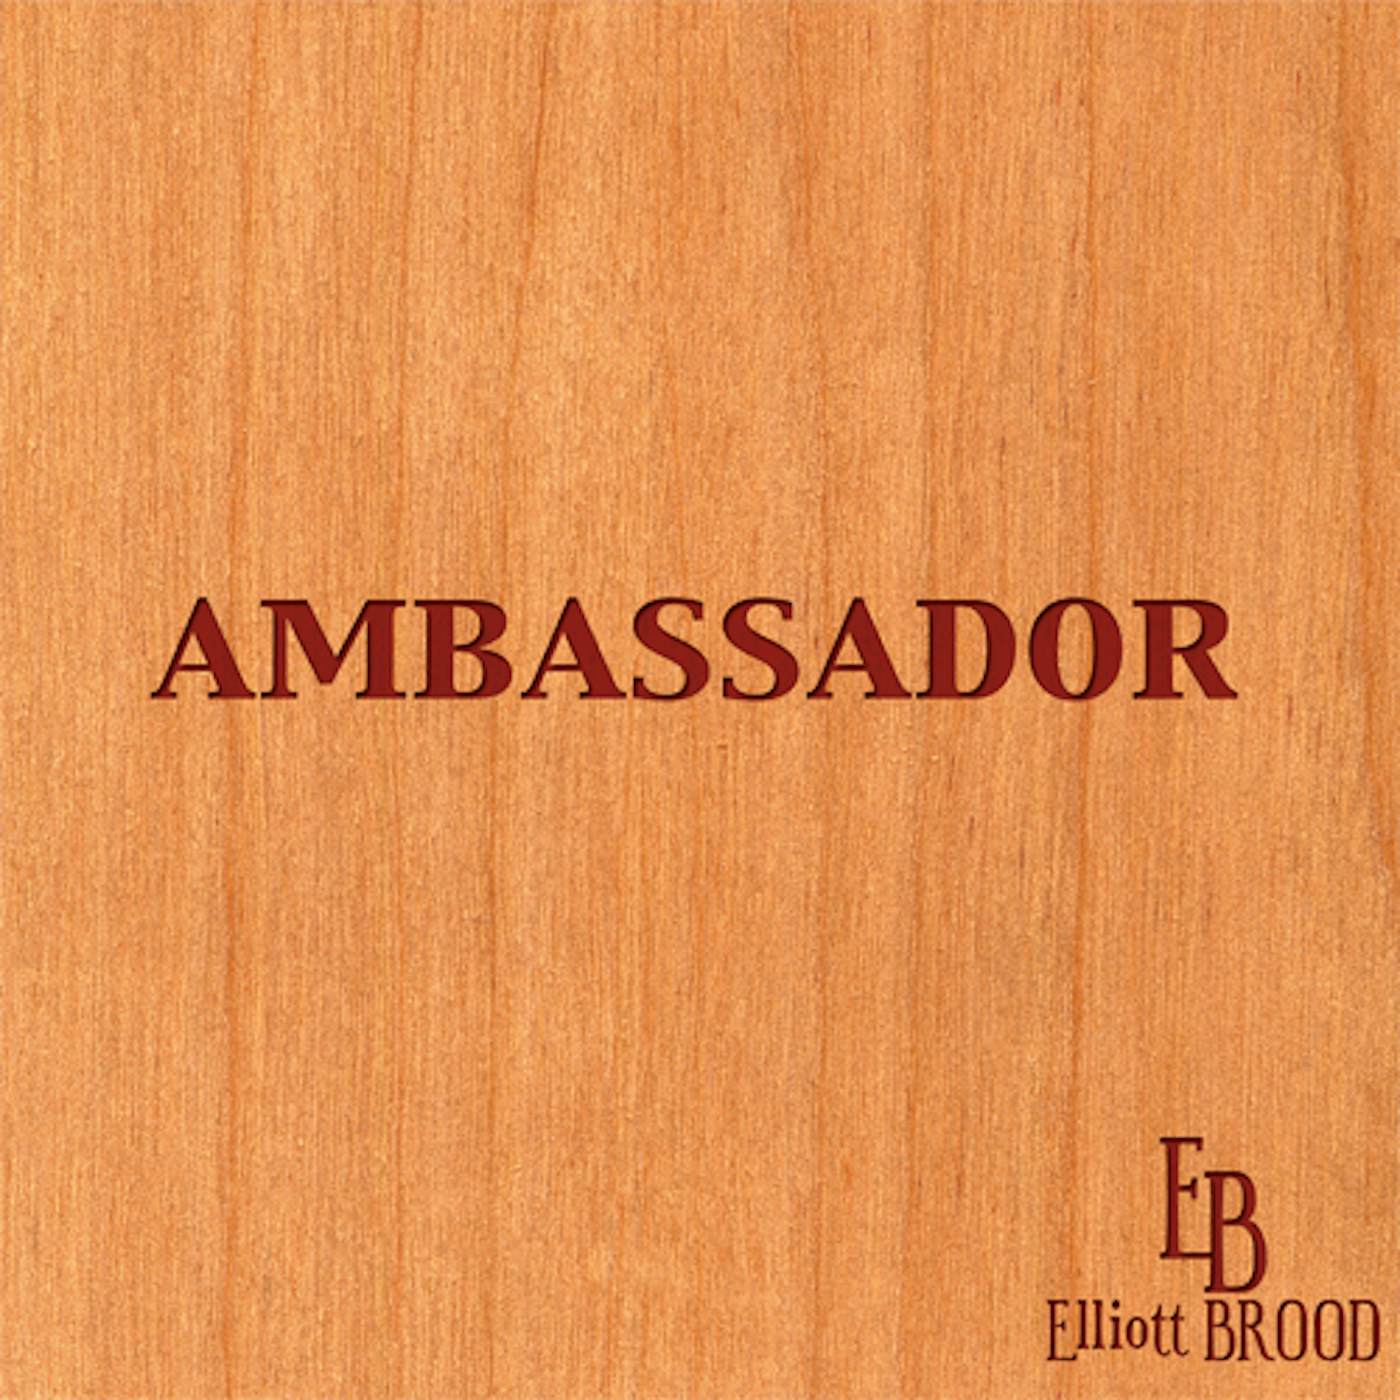 Elliott BROOD Ambassador Vinyl Record